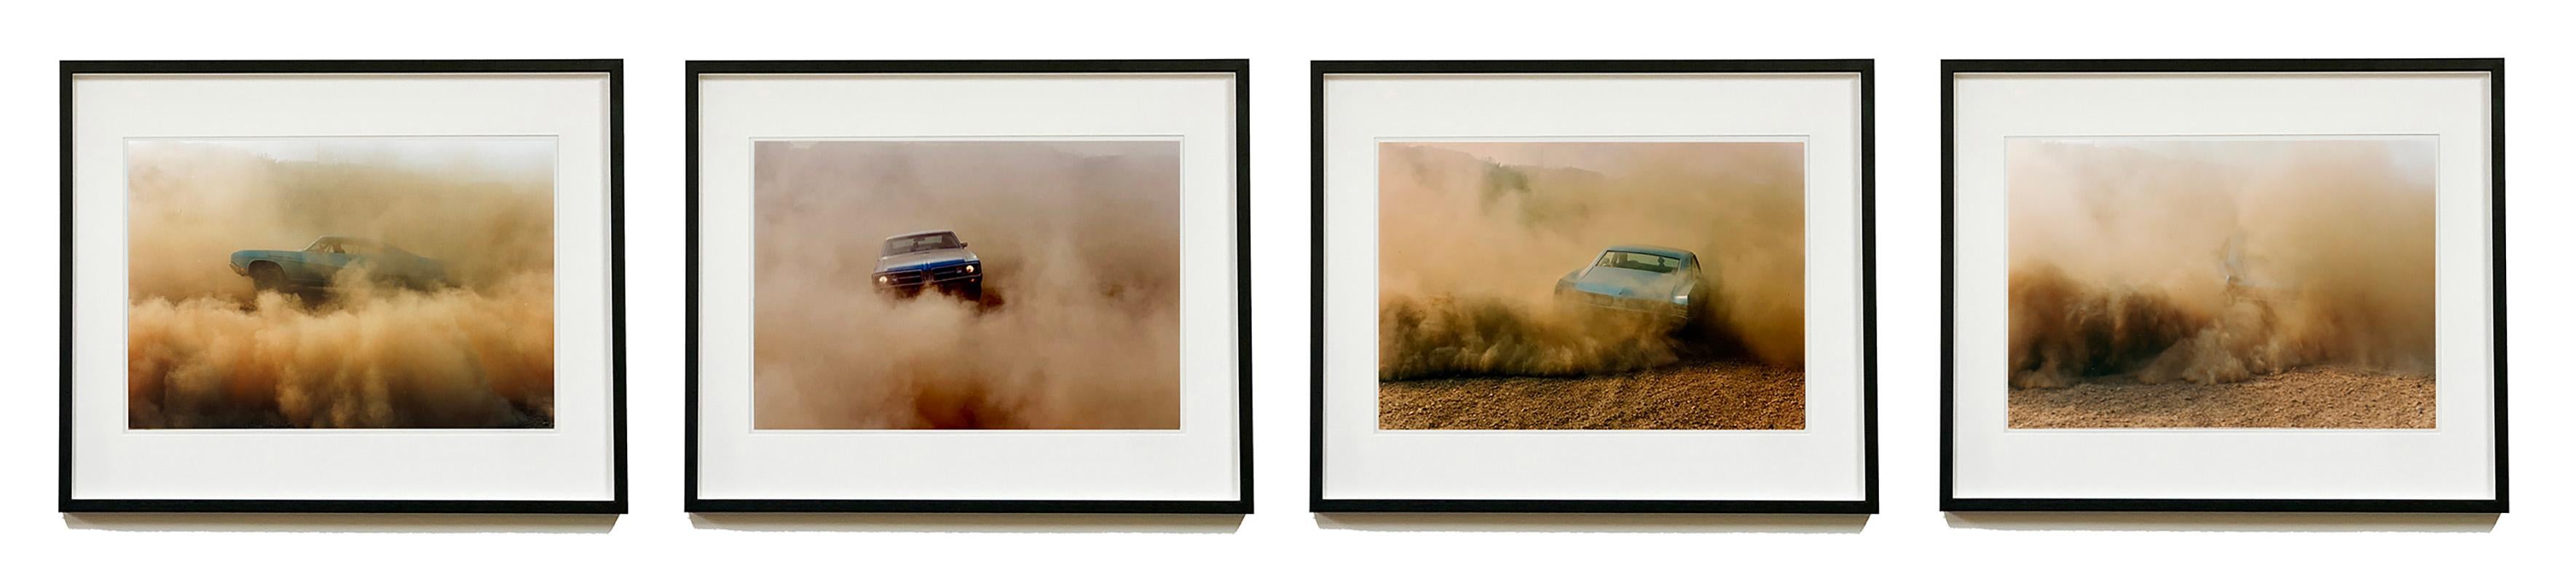 Buick in the Dust, Hemsby, Norfolk - Ensemble de quatre photographies de voitures encadrées en vente 10